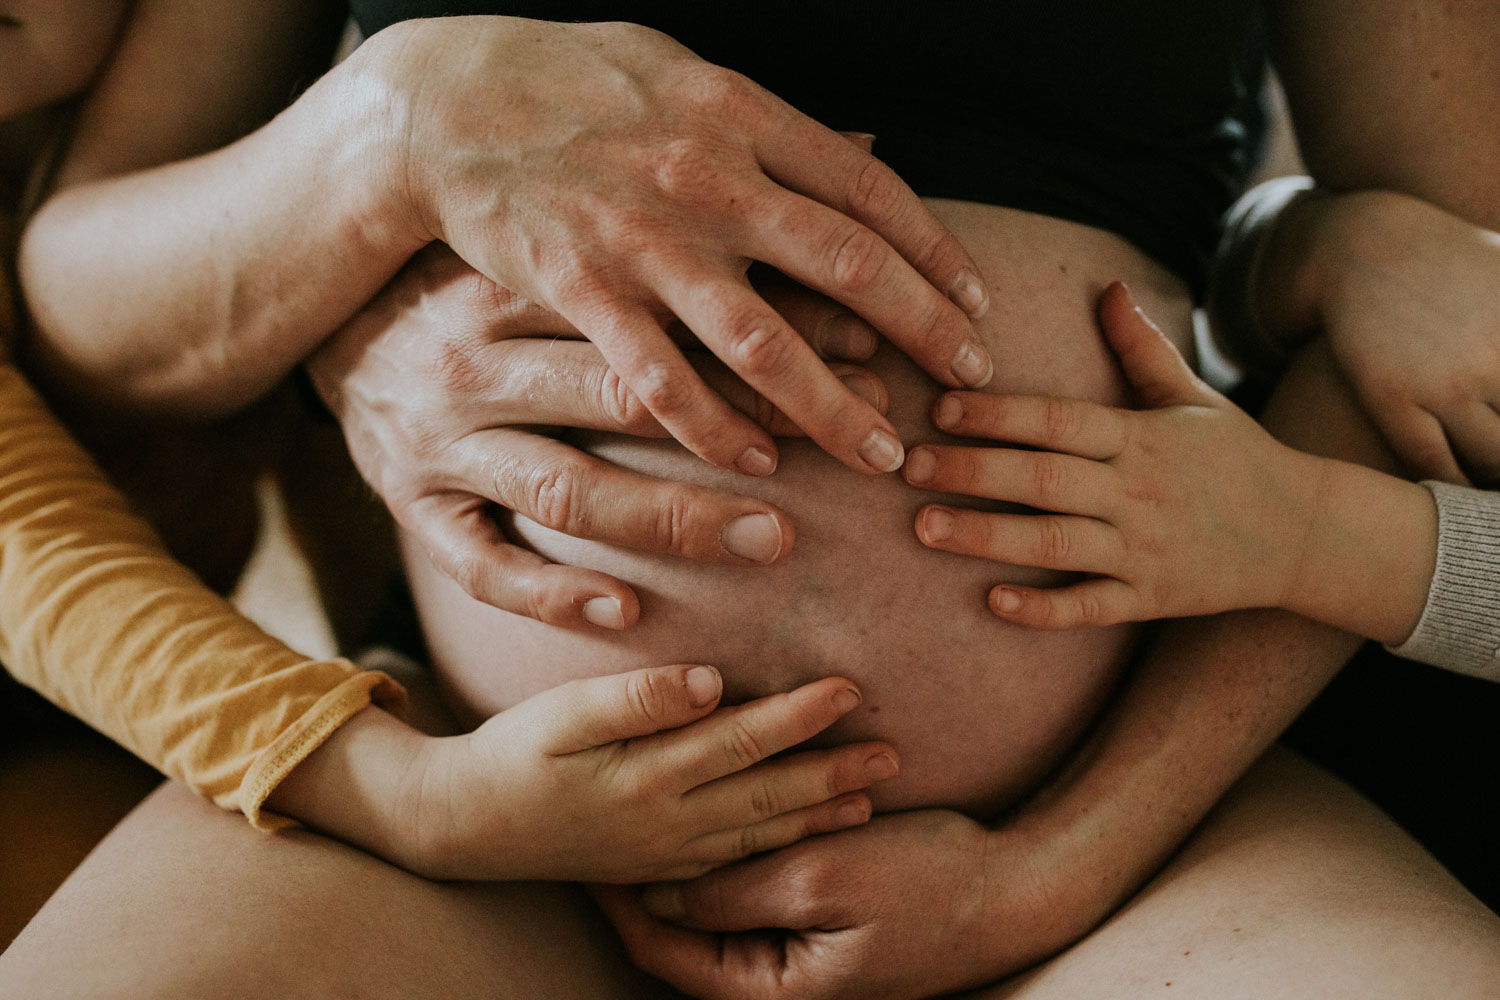 Schwangerschaftsfotografie-schwangerschaftsfotos-eschweiler-redfairy